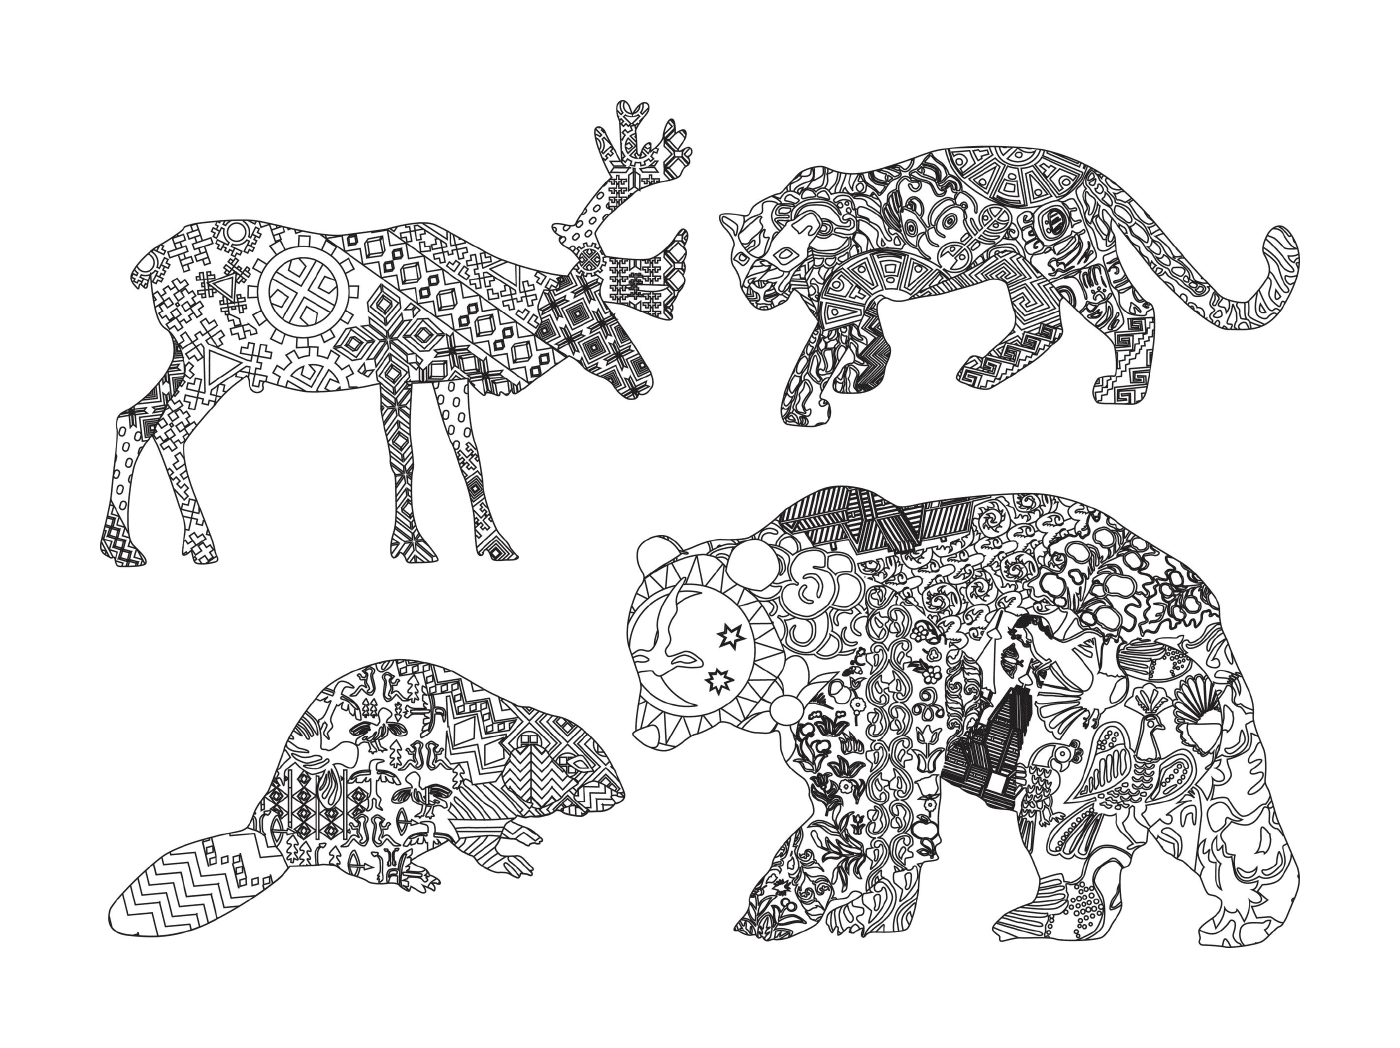  Gruppo di animali disegnati con motivi 